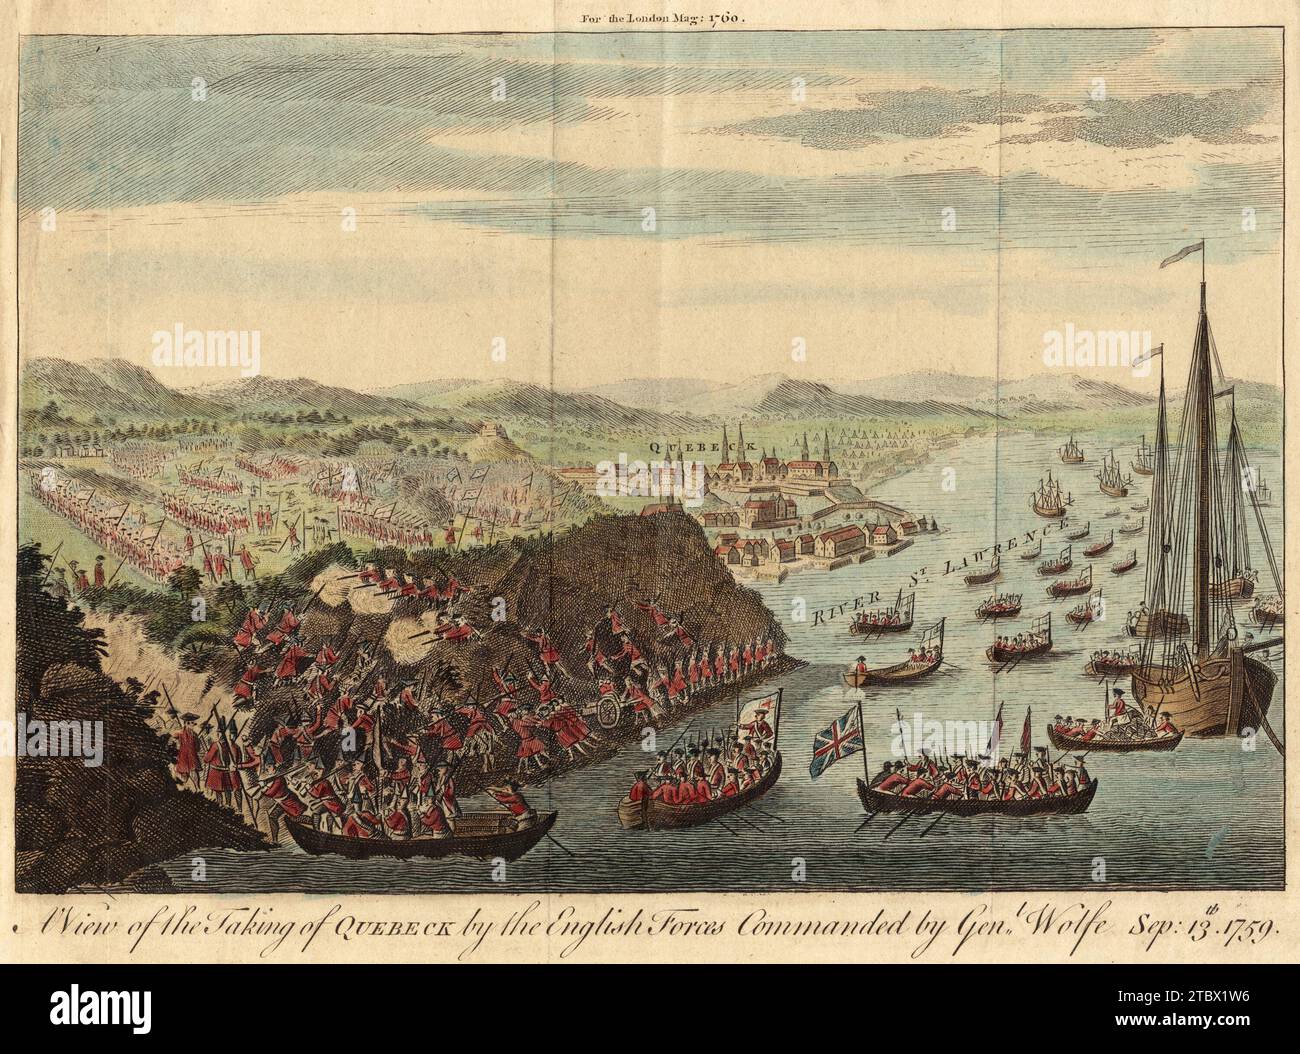 Eine Vogelperspektive der Eroberung Québecs durch die englischen Truppen unter General Wolfe am 13. September 1759, Karte ca. 1760 Stockfoto